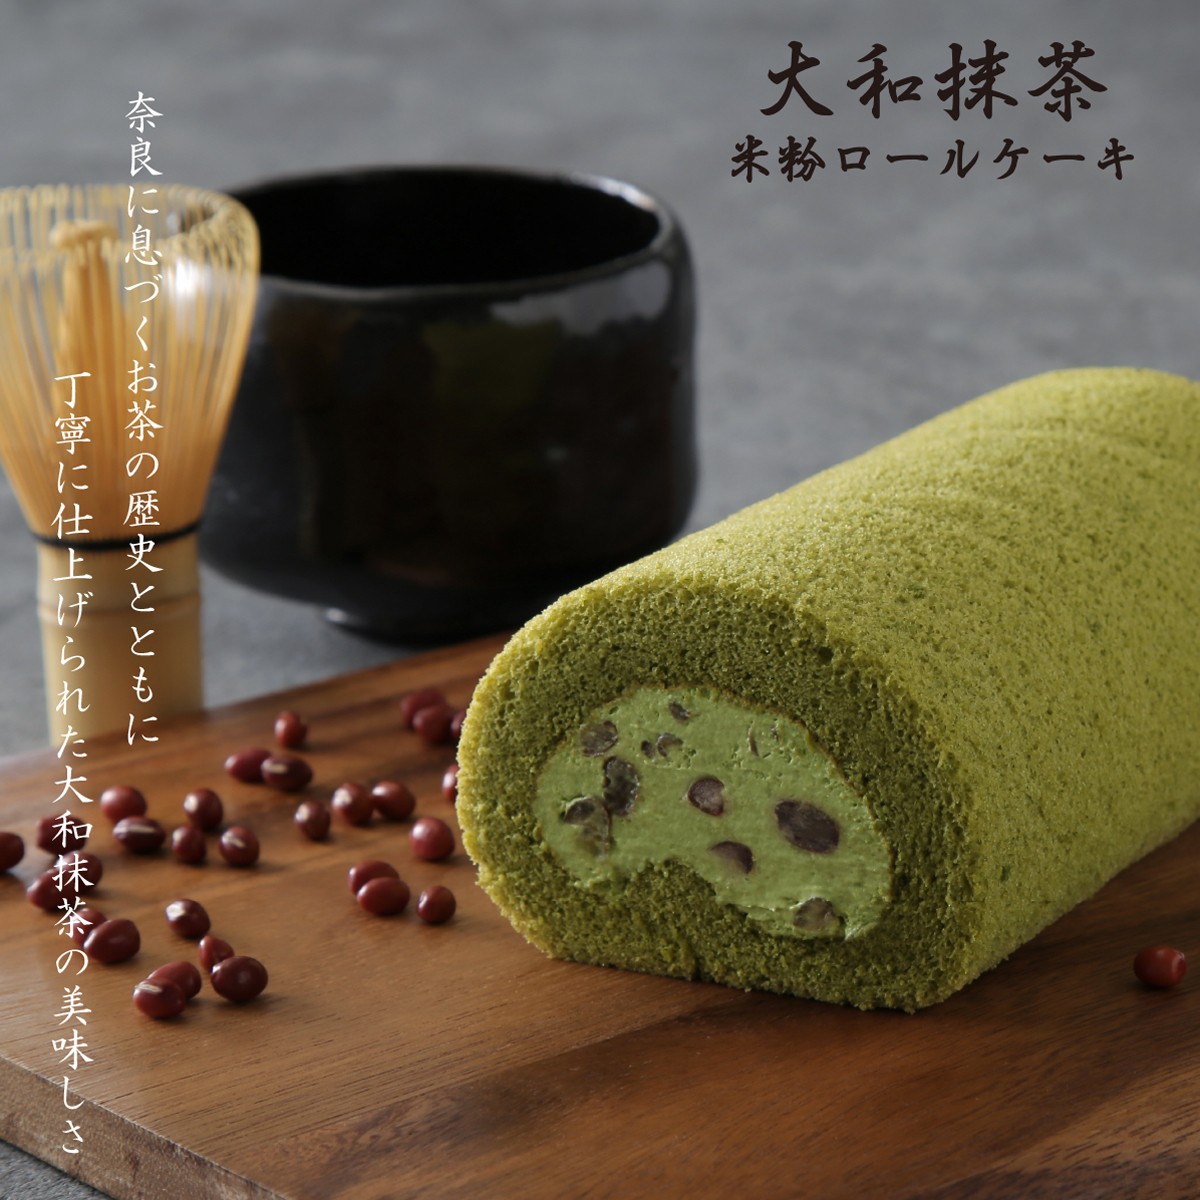 乏しい 変数 草 米粉 ロール ケーキ 抹茶 Gakkai Cloud Jp